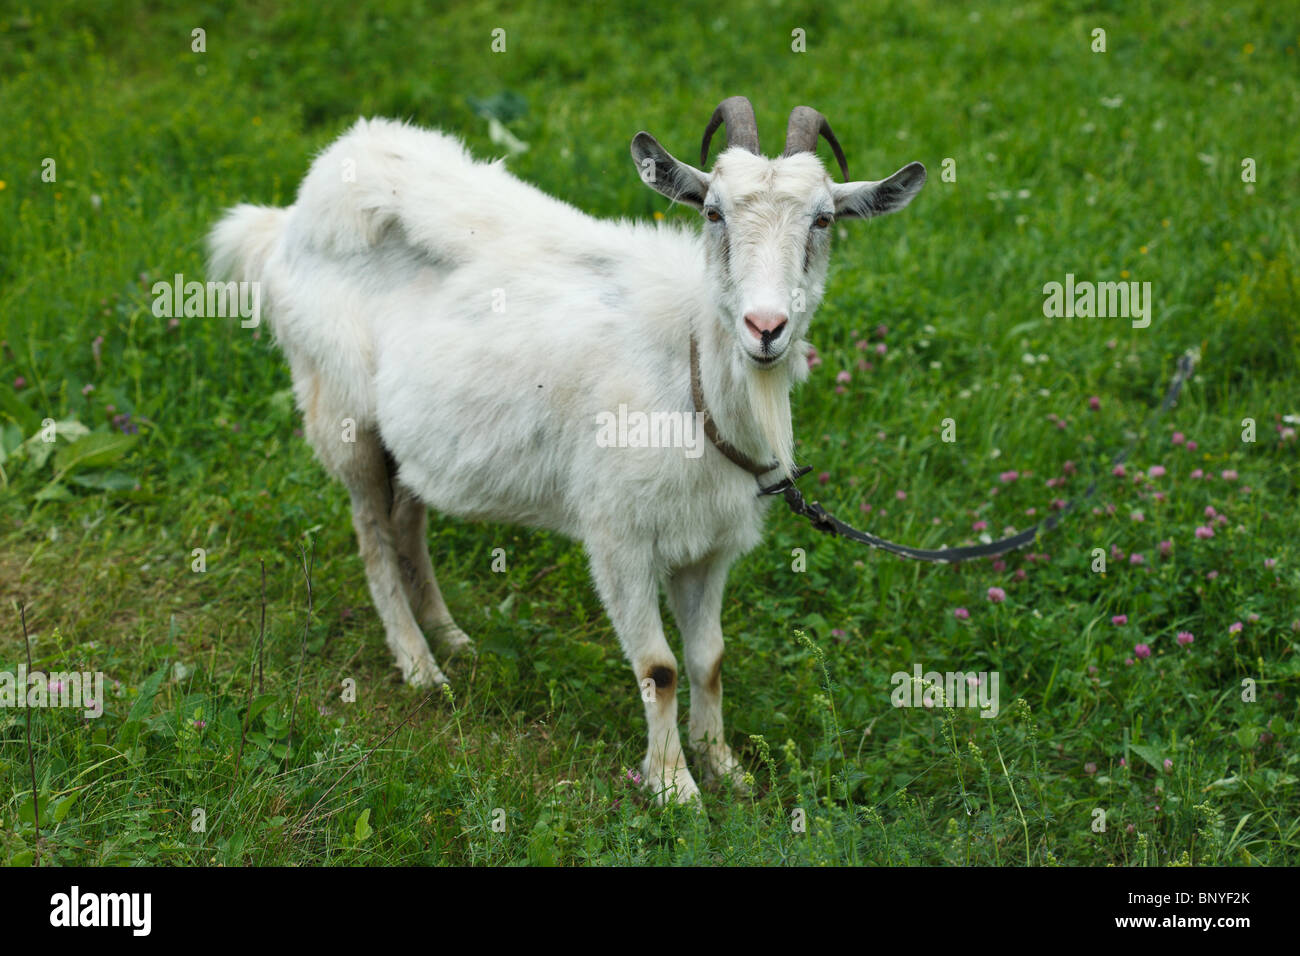 Die weiße Ziege gegen einen grünen Rasen sieht in einer Kamera. Stockfoto